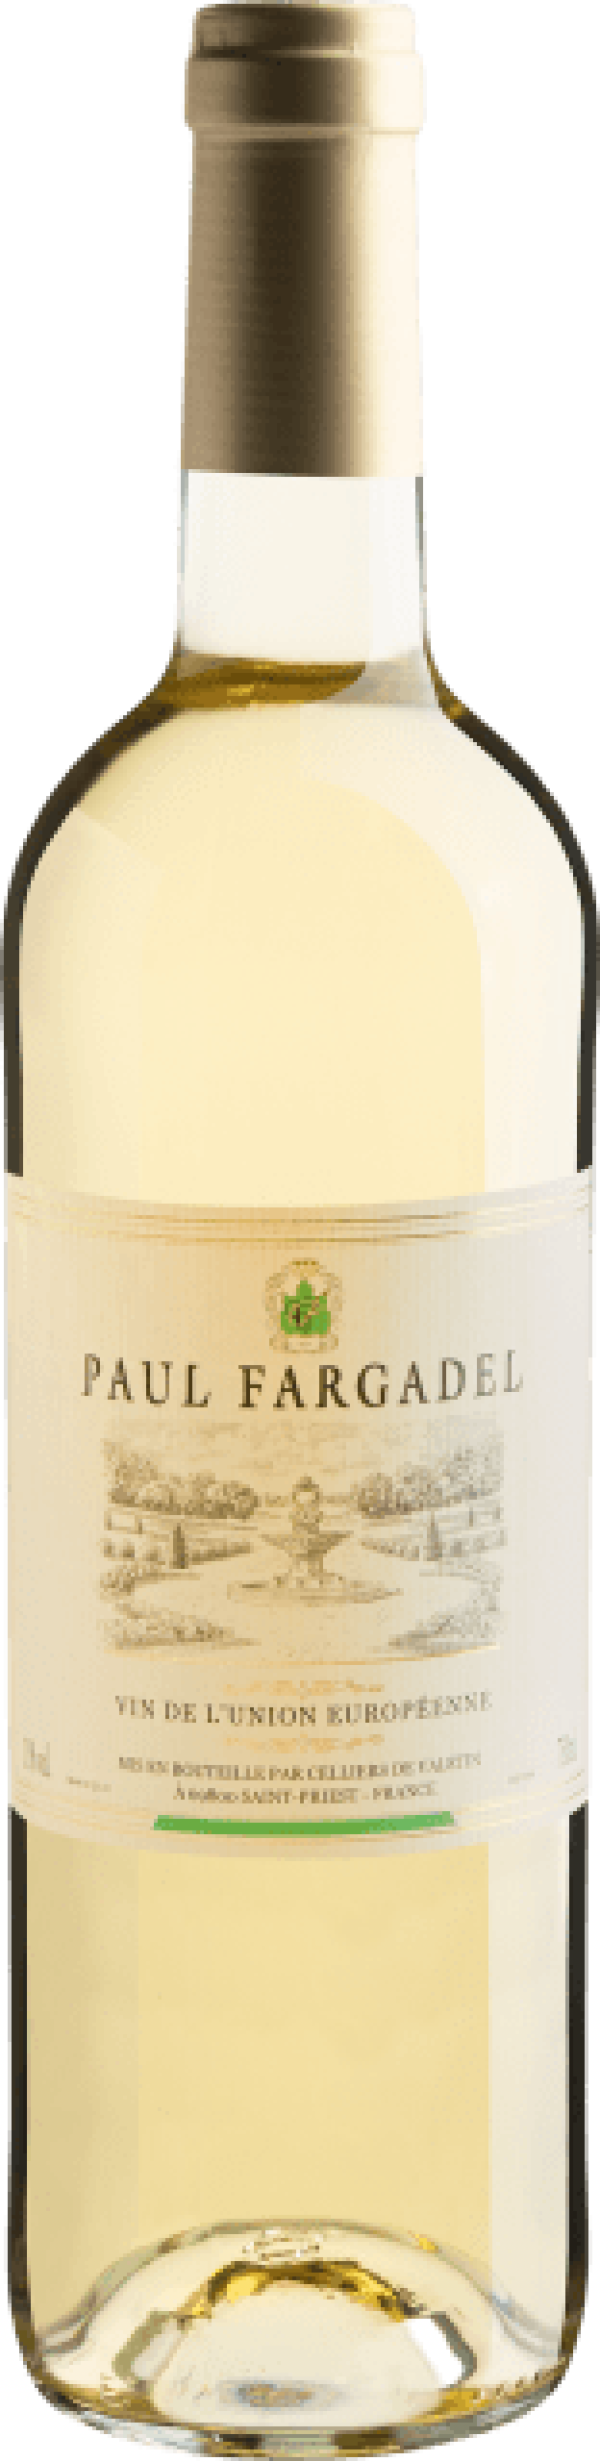 Paul Fargadel Blanc